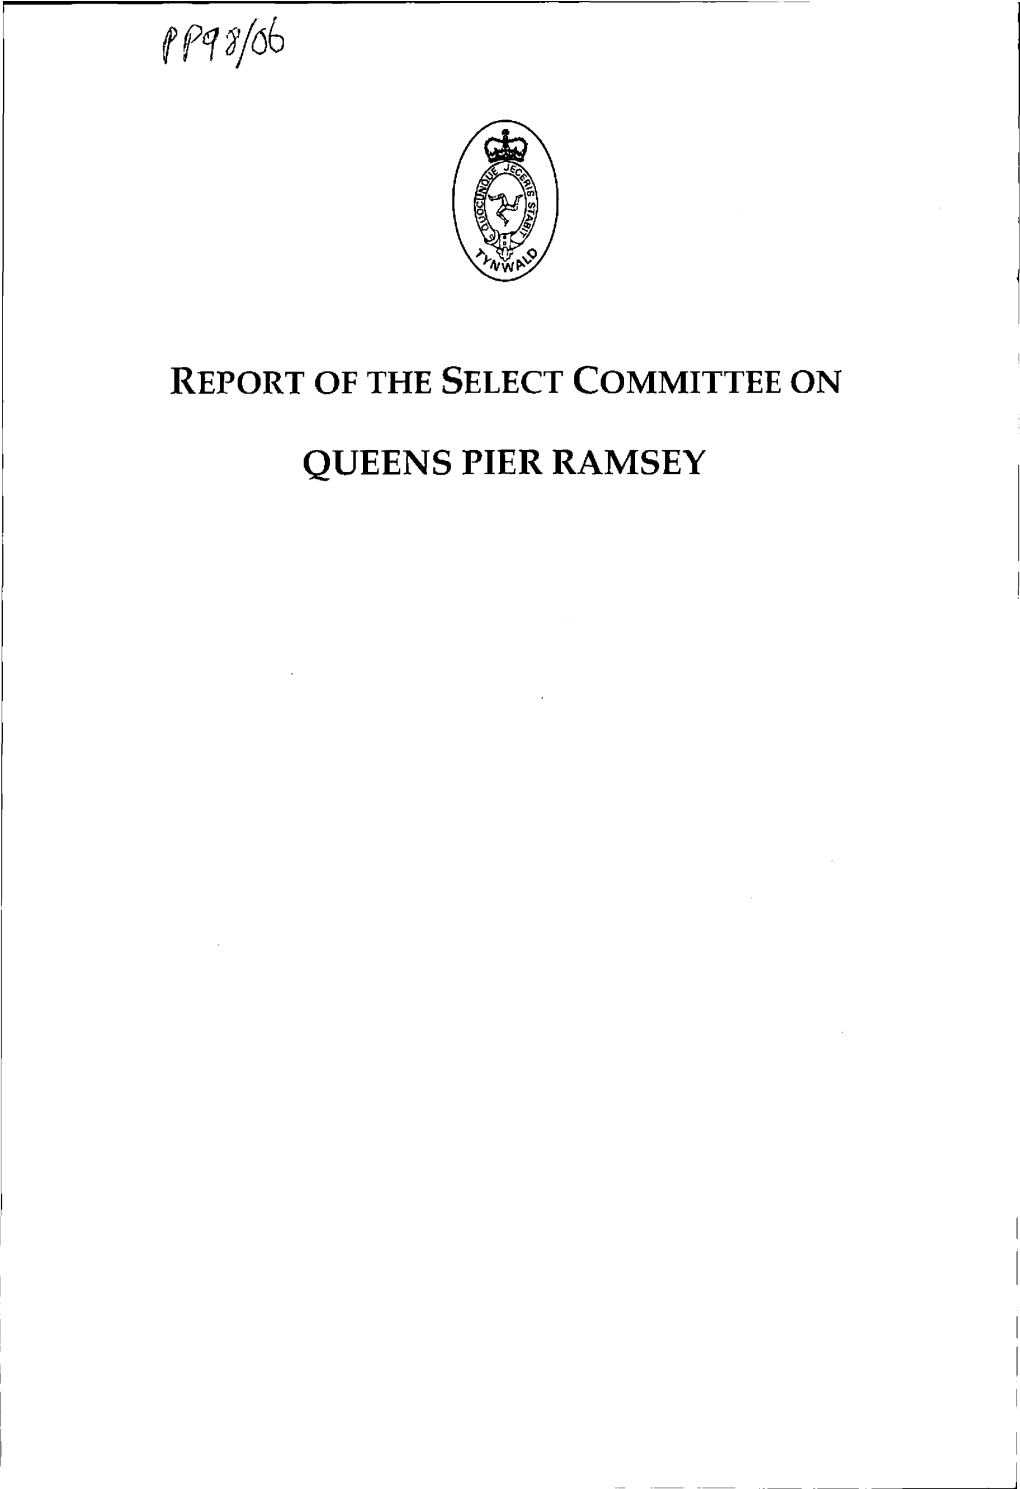 Queens Pier Ramsey